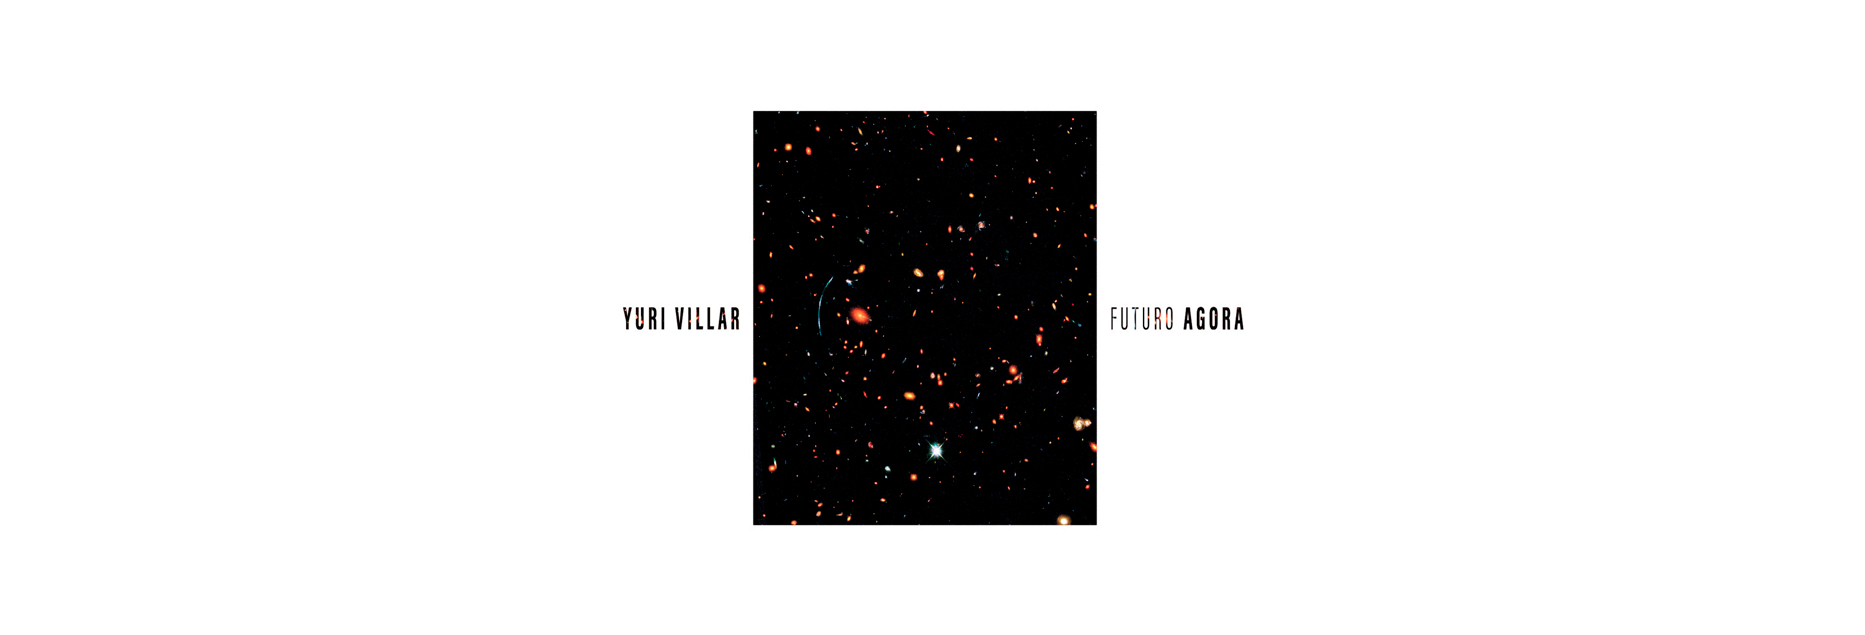 Yuri Villar estreia em álbum solo com “Futuro Agora”